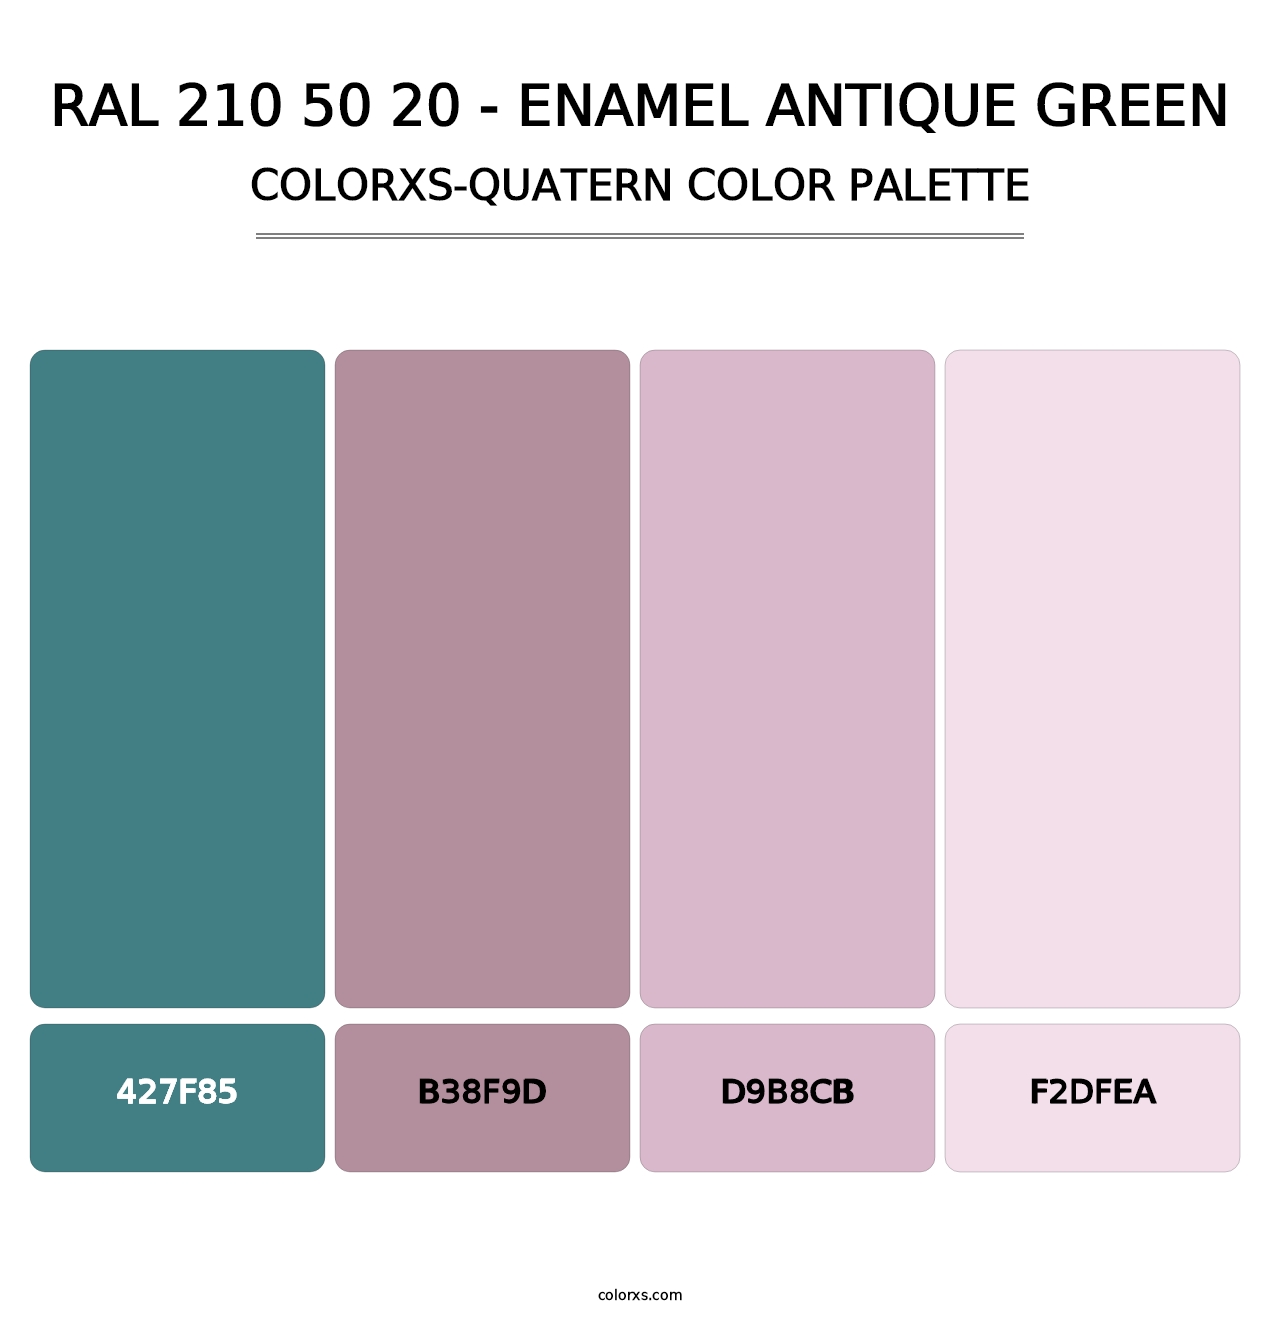 RAL 210 50 20 - Enamel Antique Green - Colorxs Quatern Palette